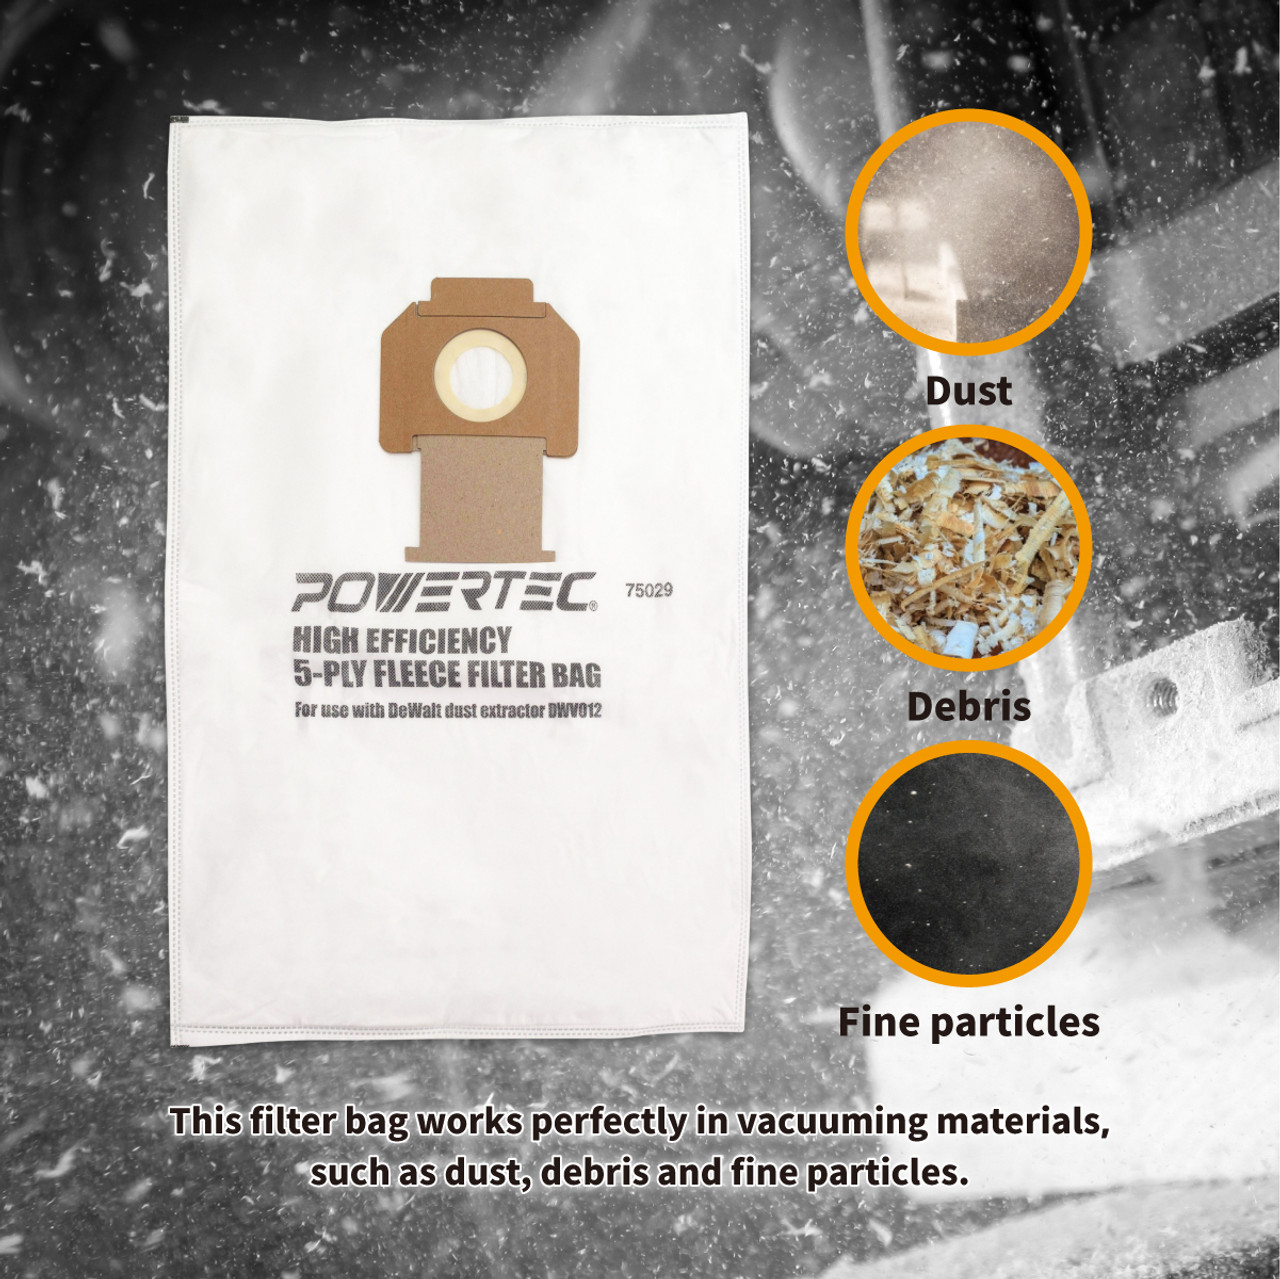 Dewalt Fleece Bag, 5 pack for DWV012 Dust Extractor, Wind-lock